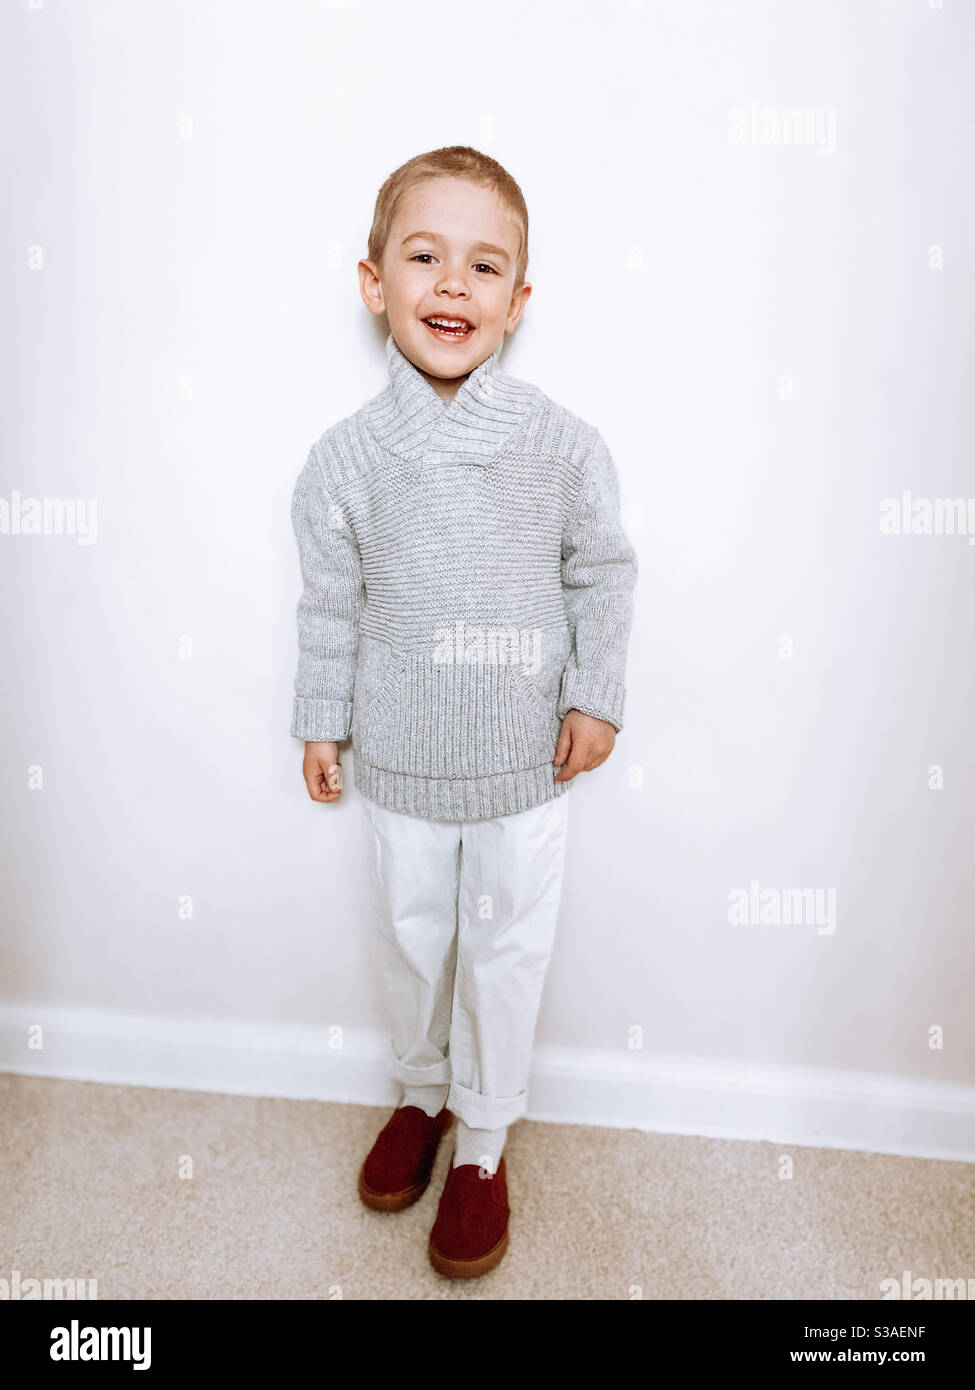 Piccolo biondo che pose per una foto il giorno di Pasqua nel 2020 in un maglione grigio in maglia, pantaloni bianchi e mocassini marroni. Foto Stock